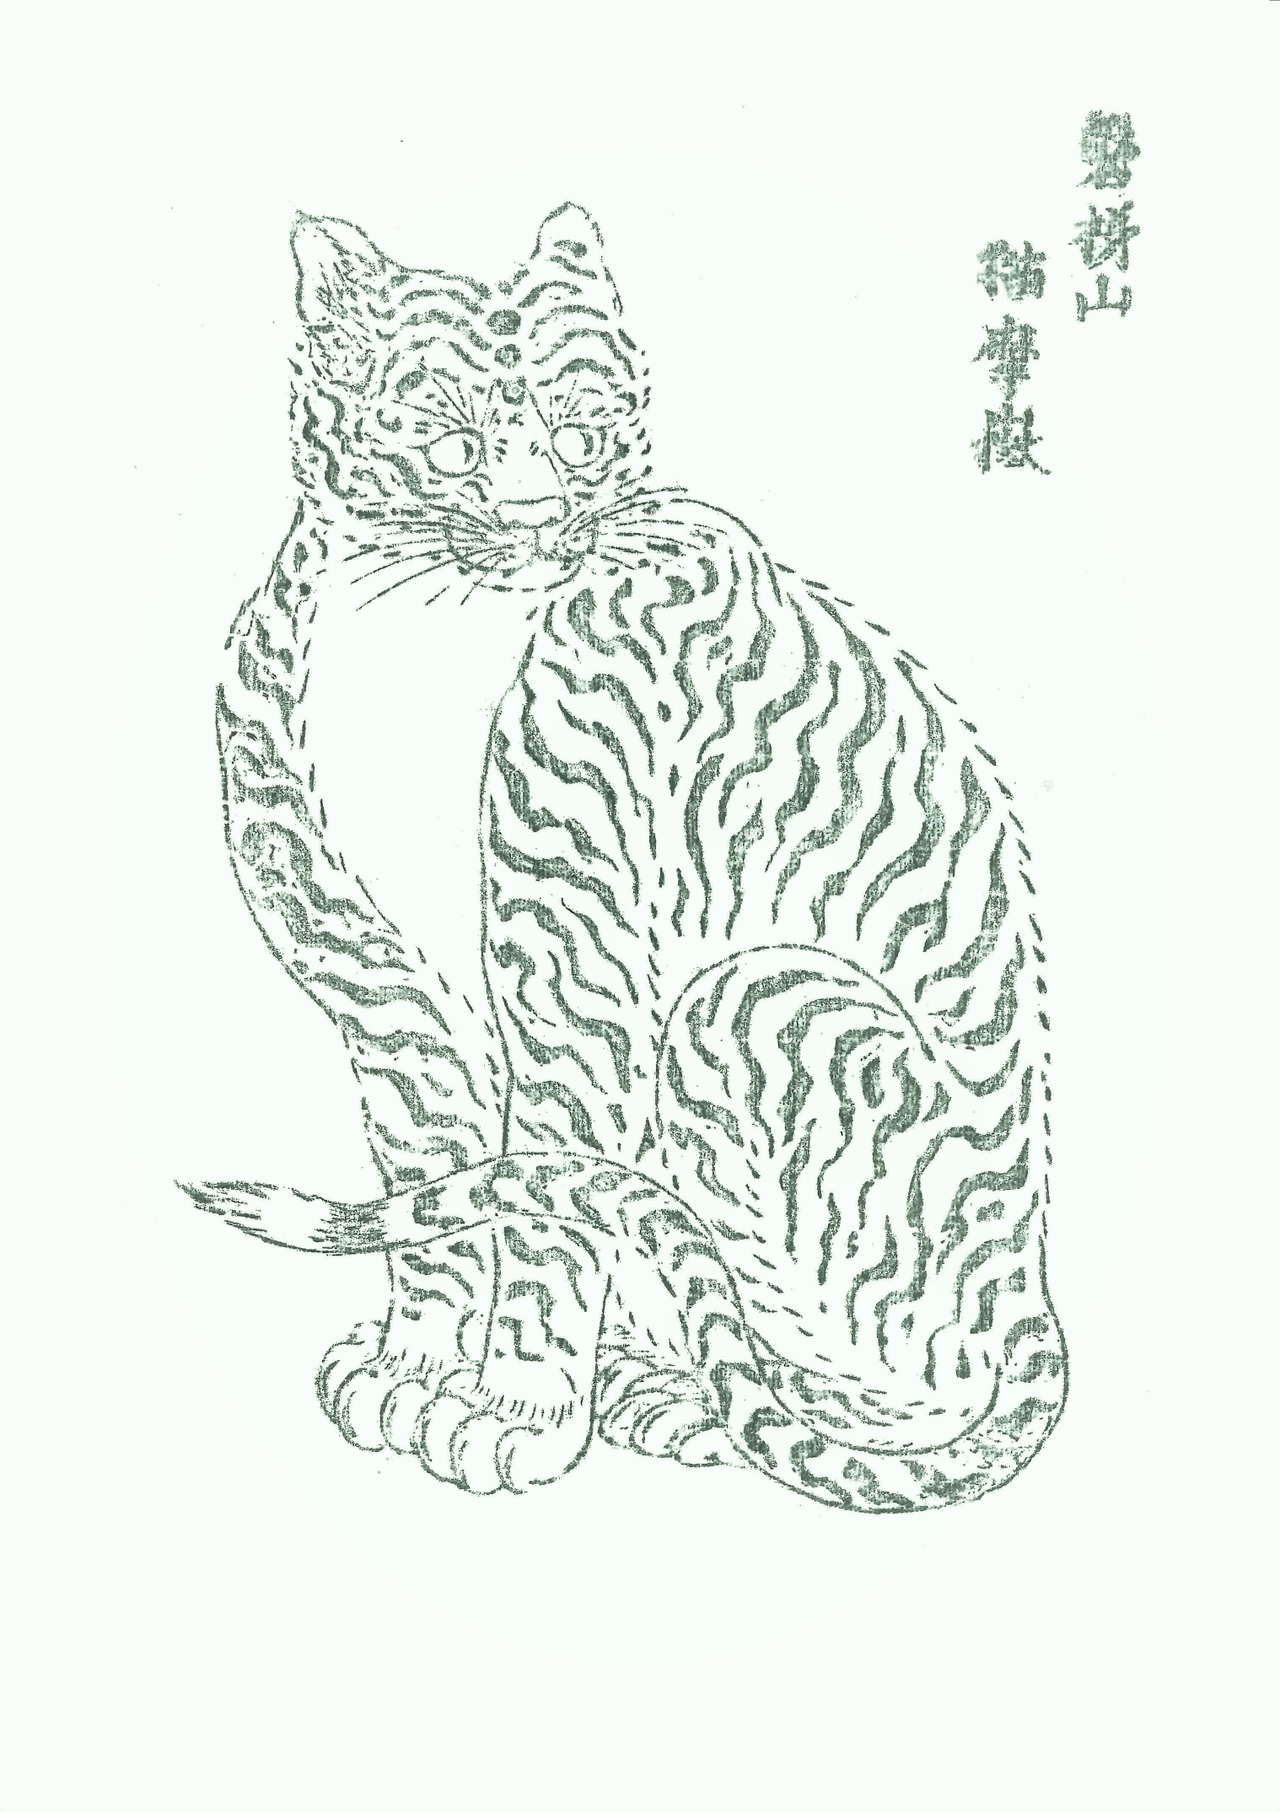 Cette image de chat était autrefois distribuée dans le sanctuaire Bandai Jinja du département de Fukushima à l’époque où prospérait l’élevage du ver à soie. Le temple Enchiji situé non loin conserve dans ses archives le bloc d’impression originel.